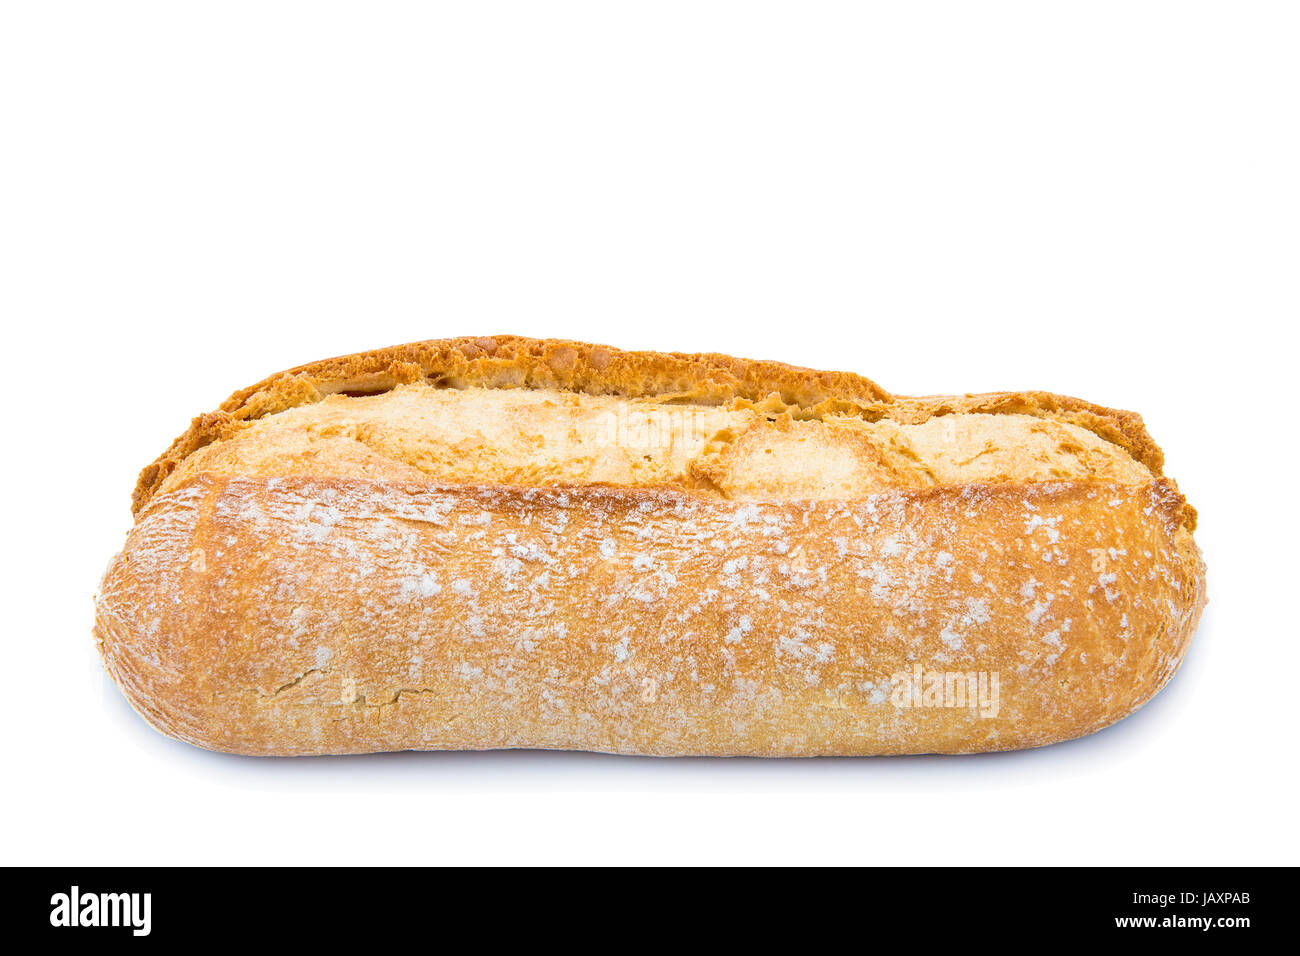 Filone di pane multigrain isolato su uno sfondo bianco Foto Stock